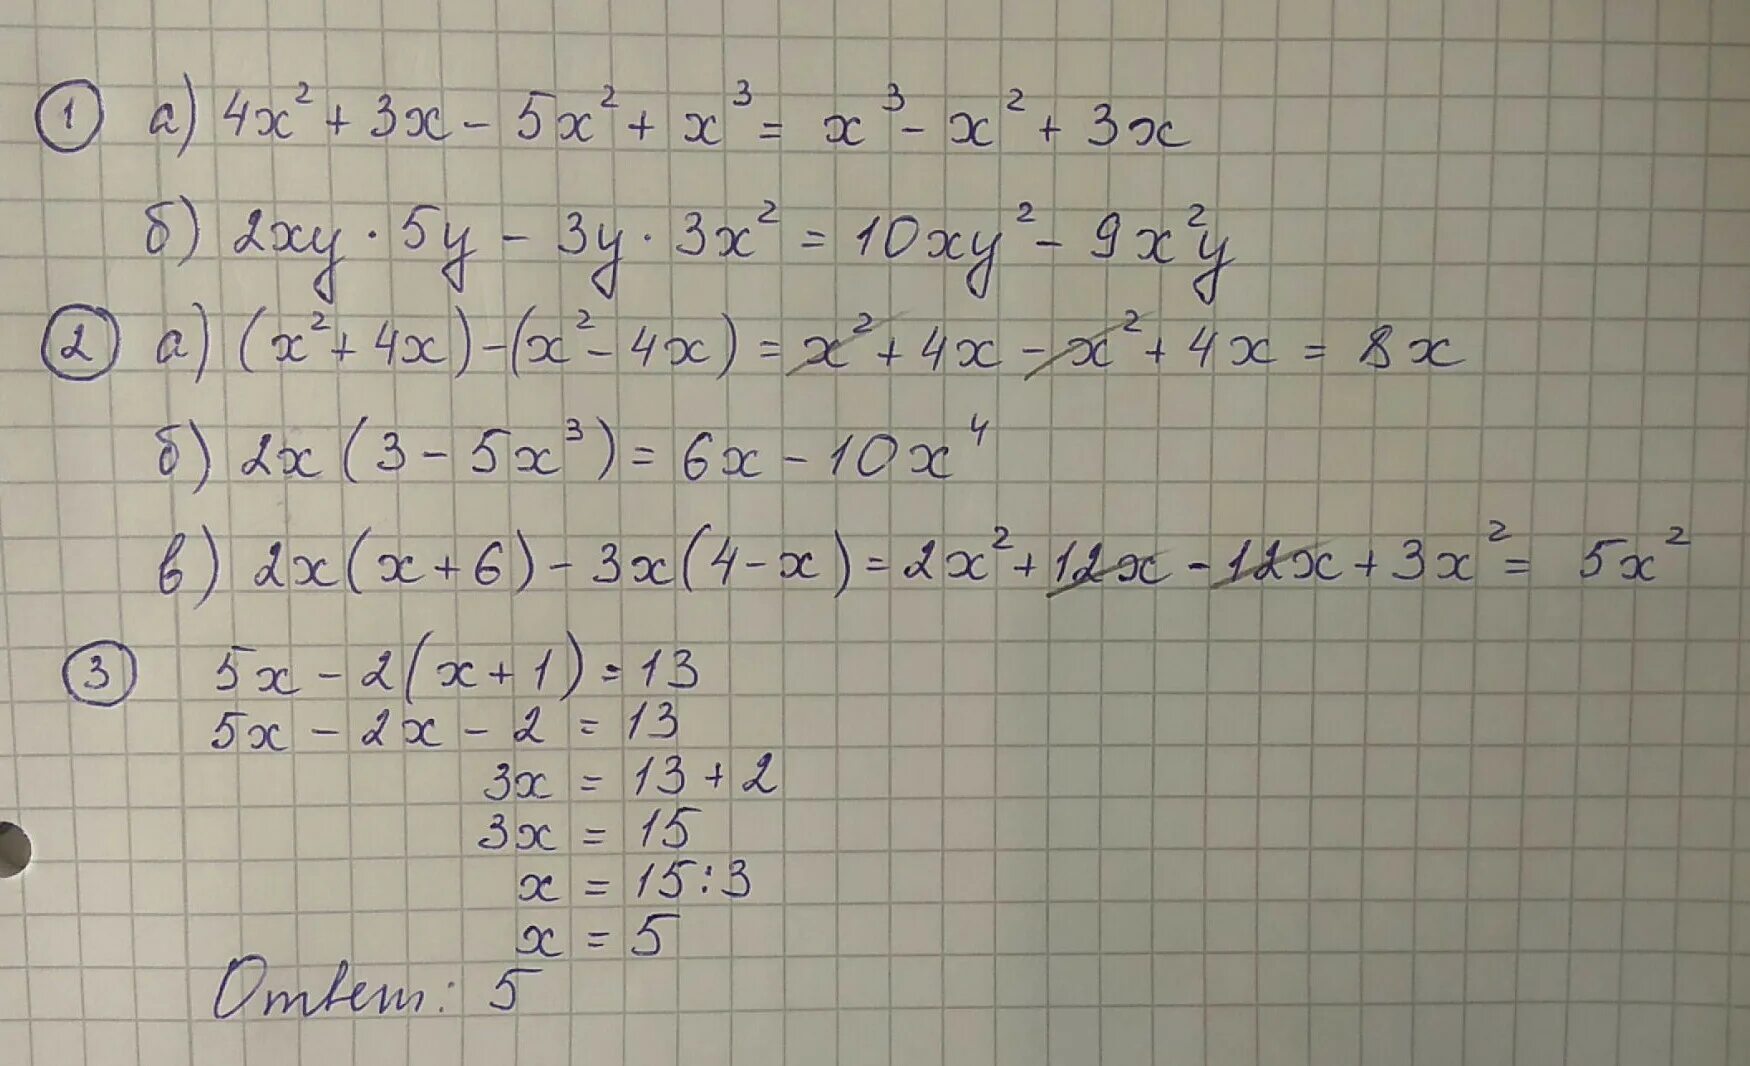 У 3 5х 9. (5х2 – 3ху -у2) - (*) = х2 + 3ху. Х+2у=5 ху=2. 2ху*5у-3у*3х2. -1.2Ху2 * 6х3у5 с пояснениями.